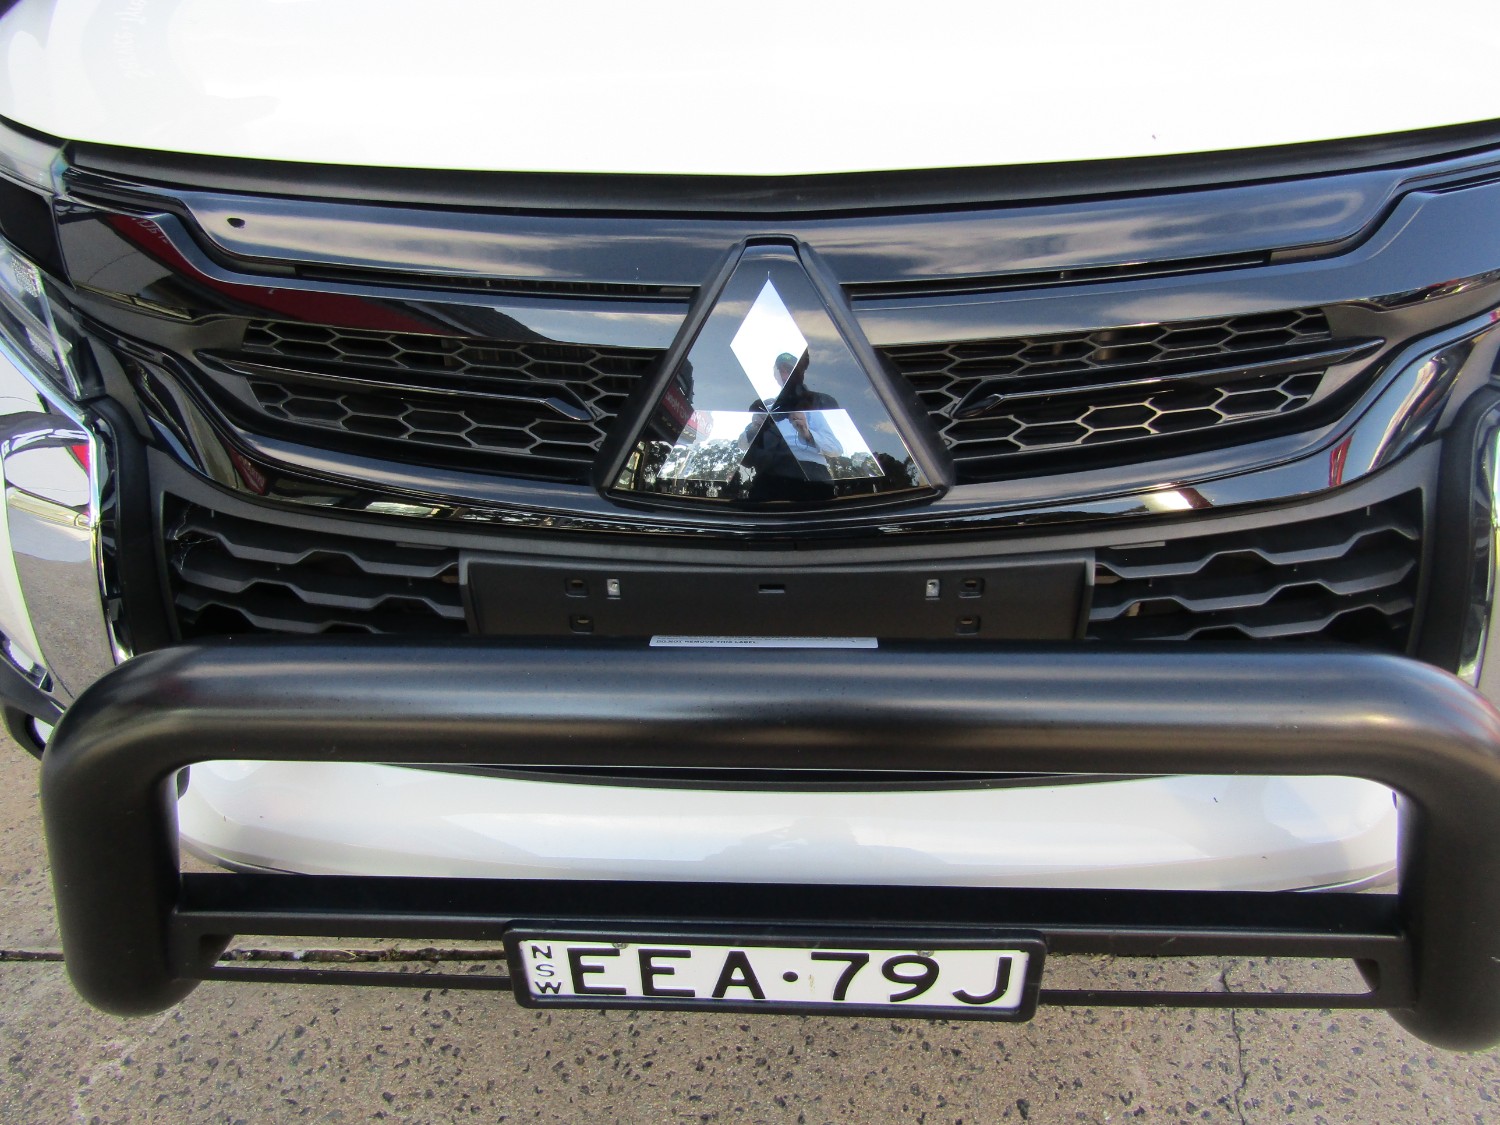 2018 MY19 Mitsubishi Pajero Sport QE Black Edition Wagon Image 9